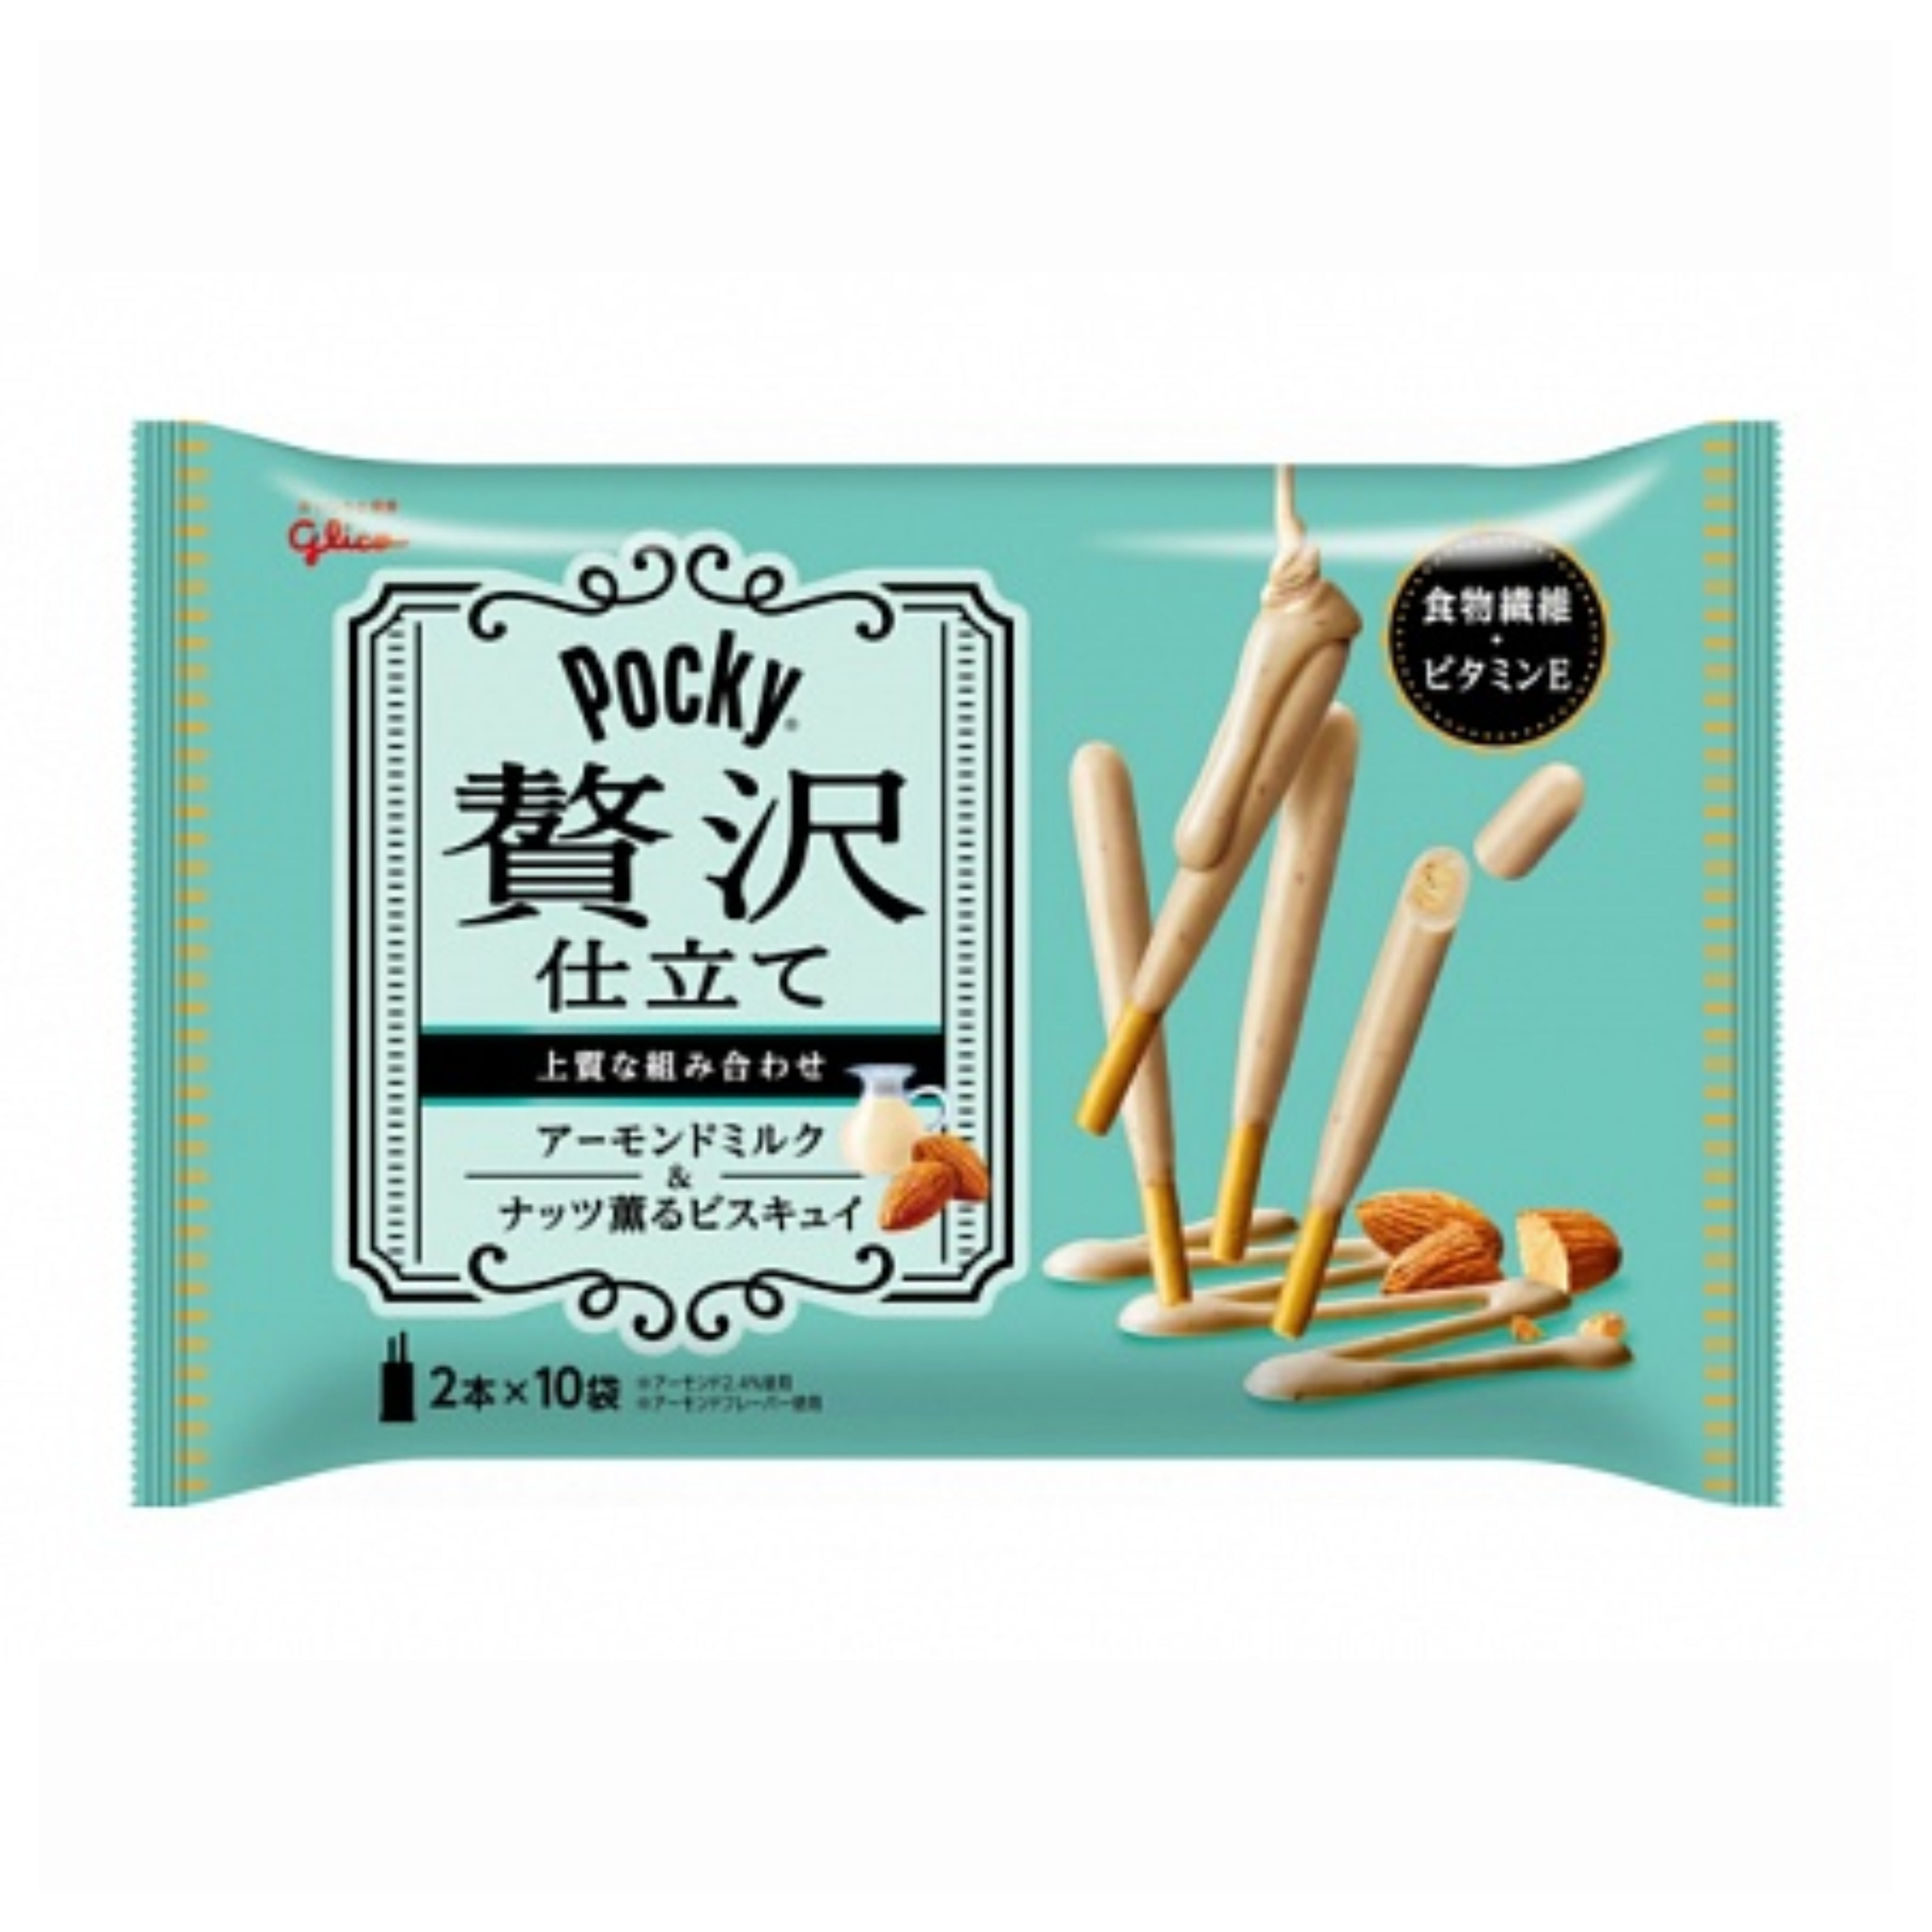 Pocky Zeitaku Jitate Luxury Almond Milk Biscuit Sticks